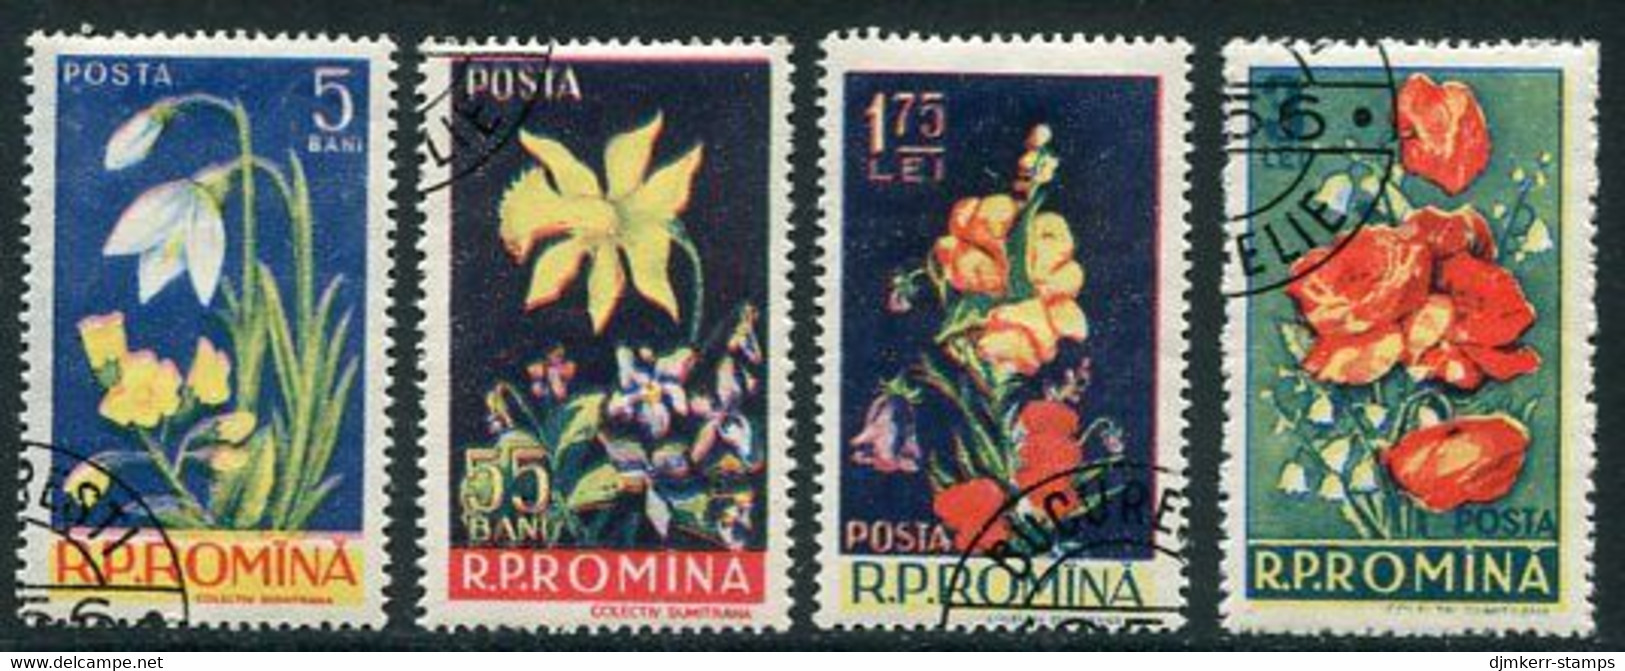 ROMANIA 1956 Flowers Used.  Michel 1589-92 - Gebruikt